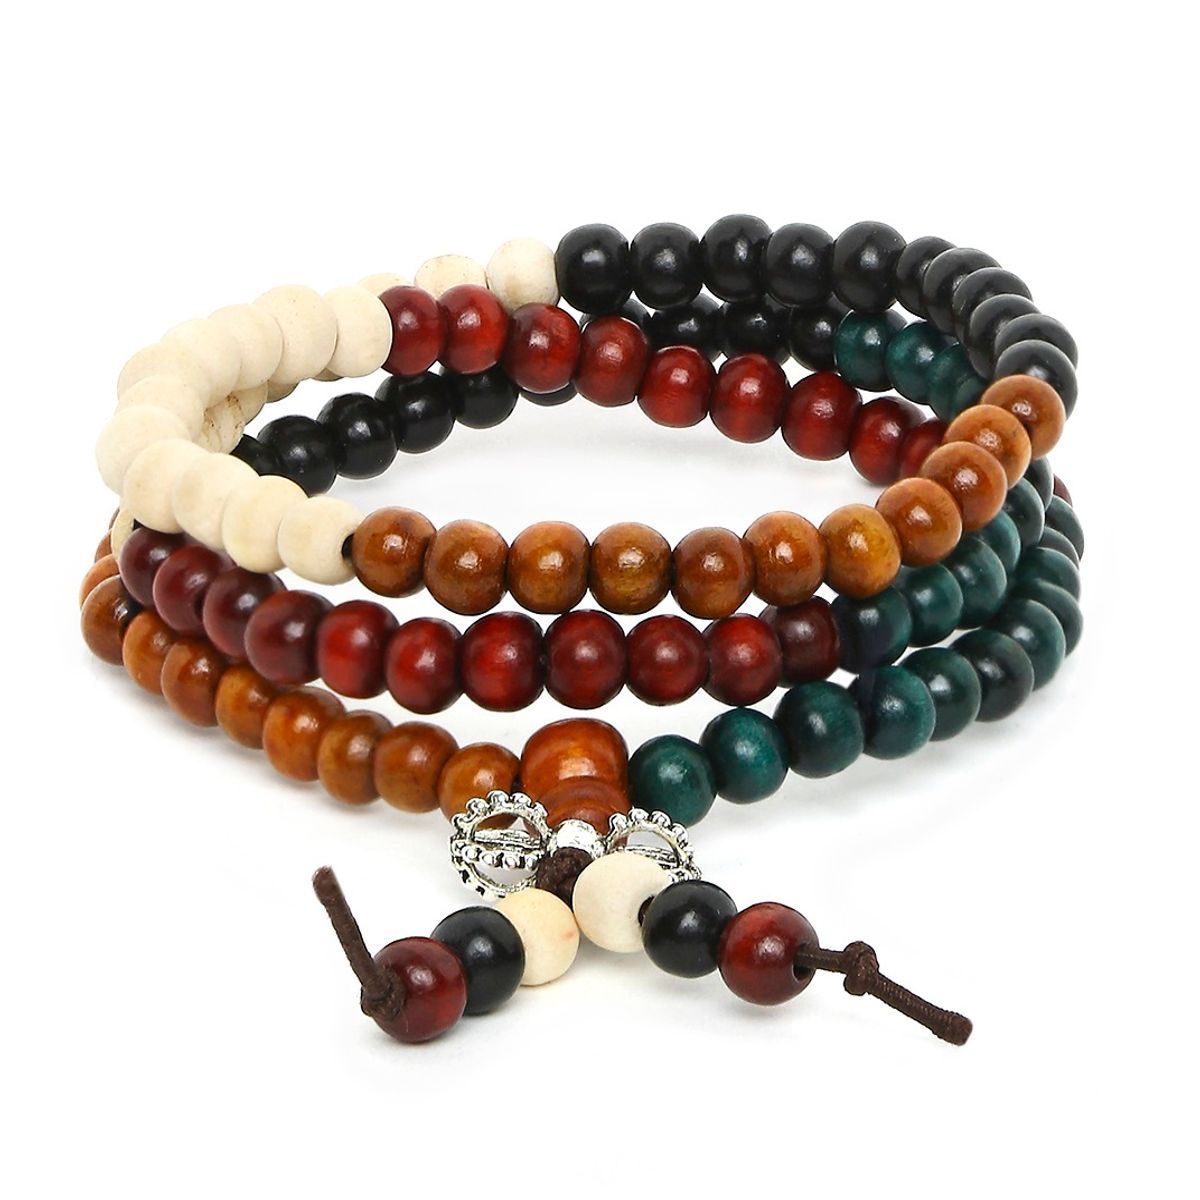 Share 85+ meditation beads bracelet super hot